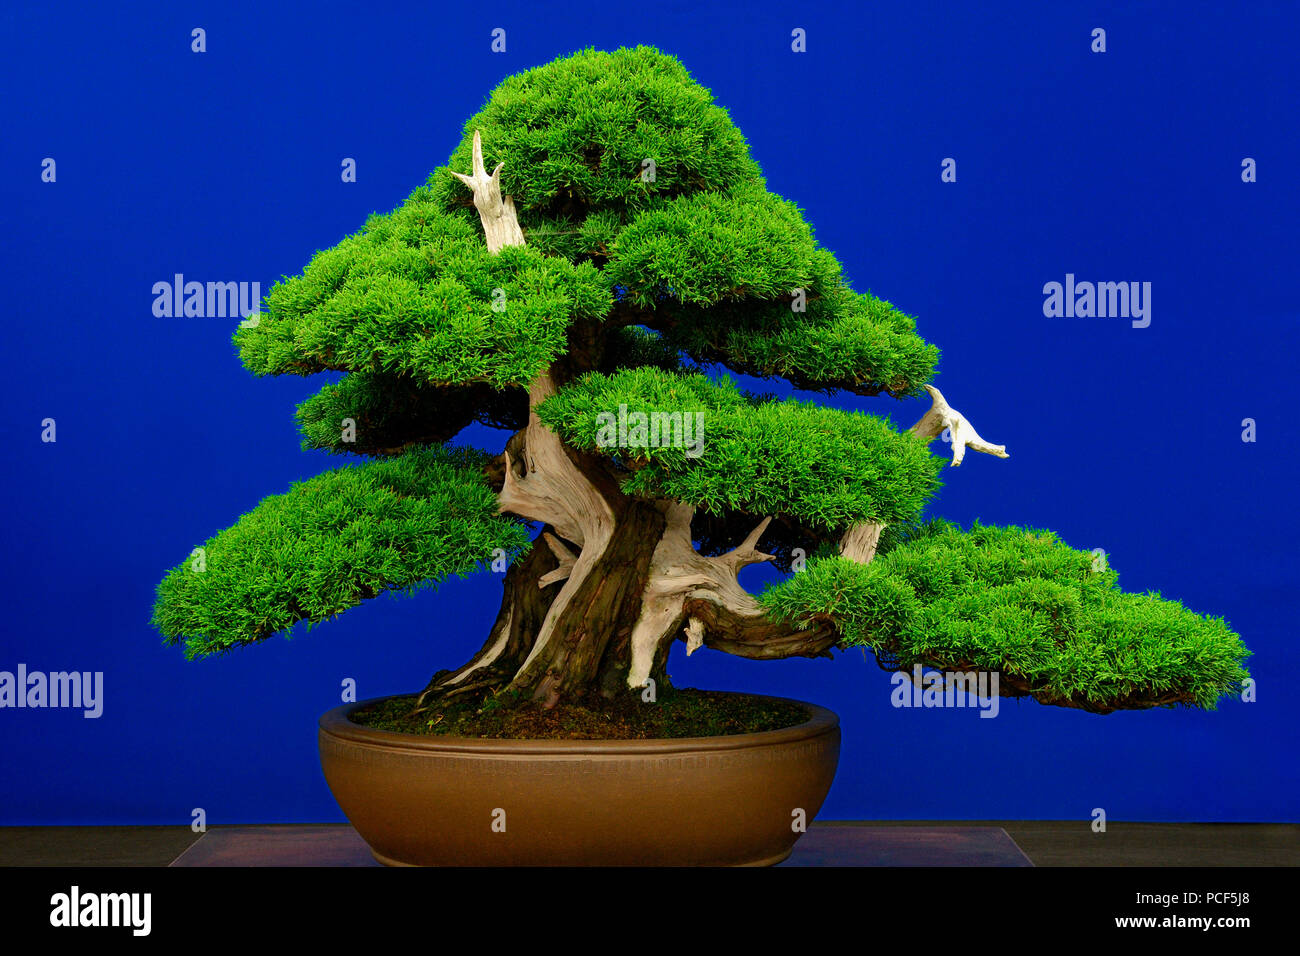 Bonsai-Baum, Chinesischer Wacholder, Juniperus chinensis, Sorte Itoigawa, ca. 1875 Foto de stock